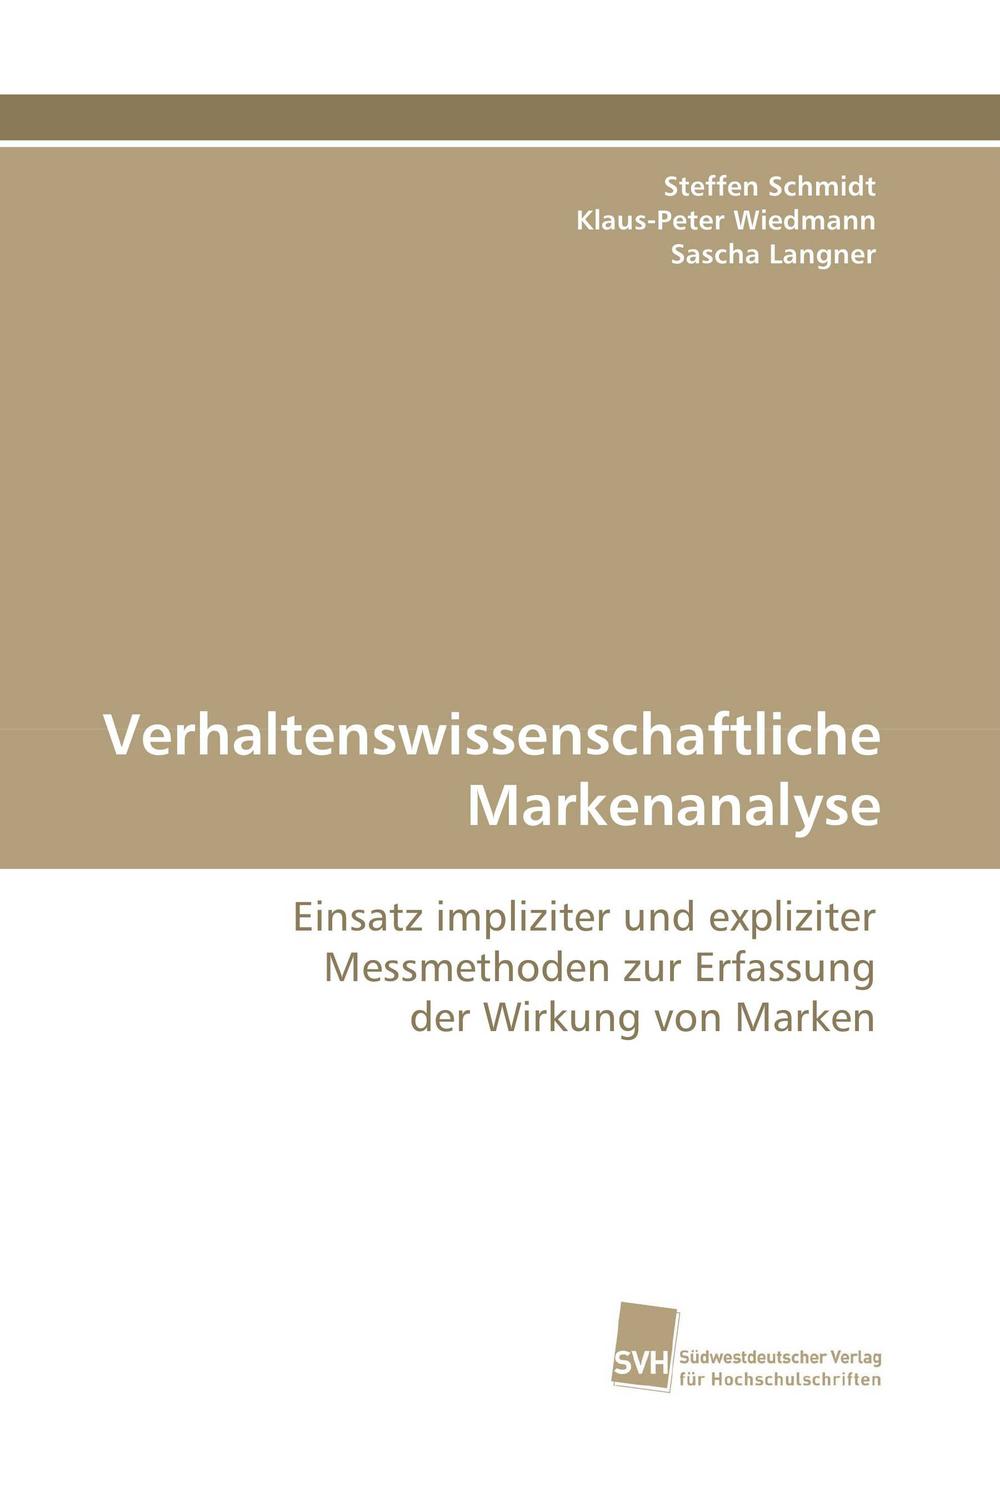 Verhaltenswissenschaftliche Markenanalyse - Steffen Schmidt, Klaus-Peter Wiedmann, Sascha Langner